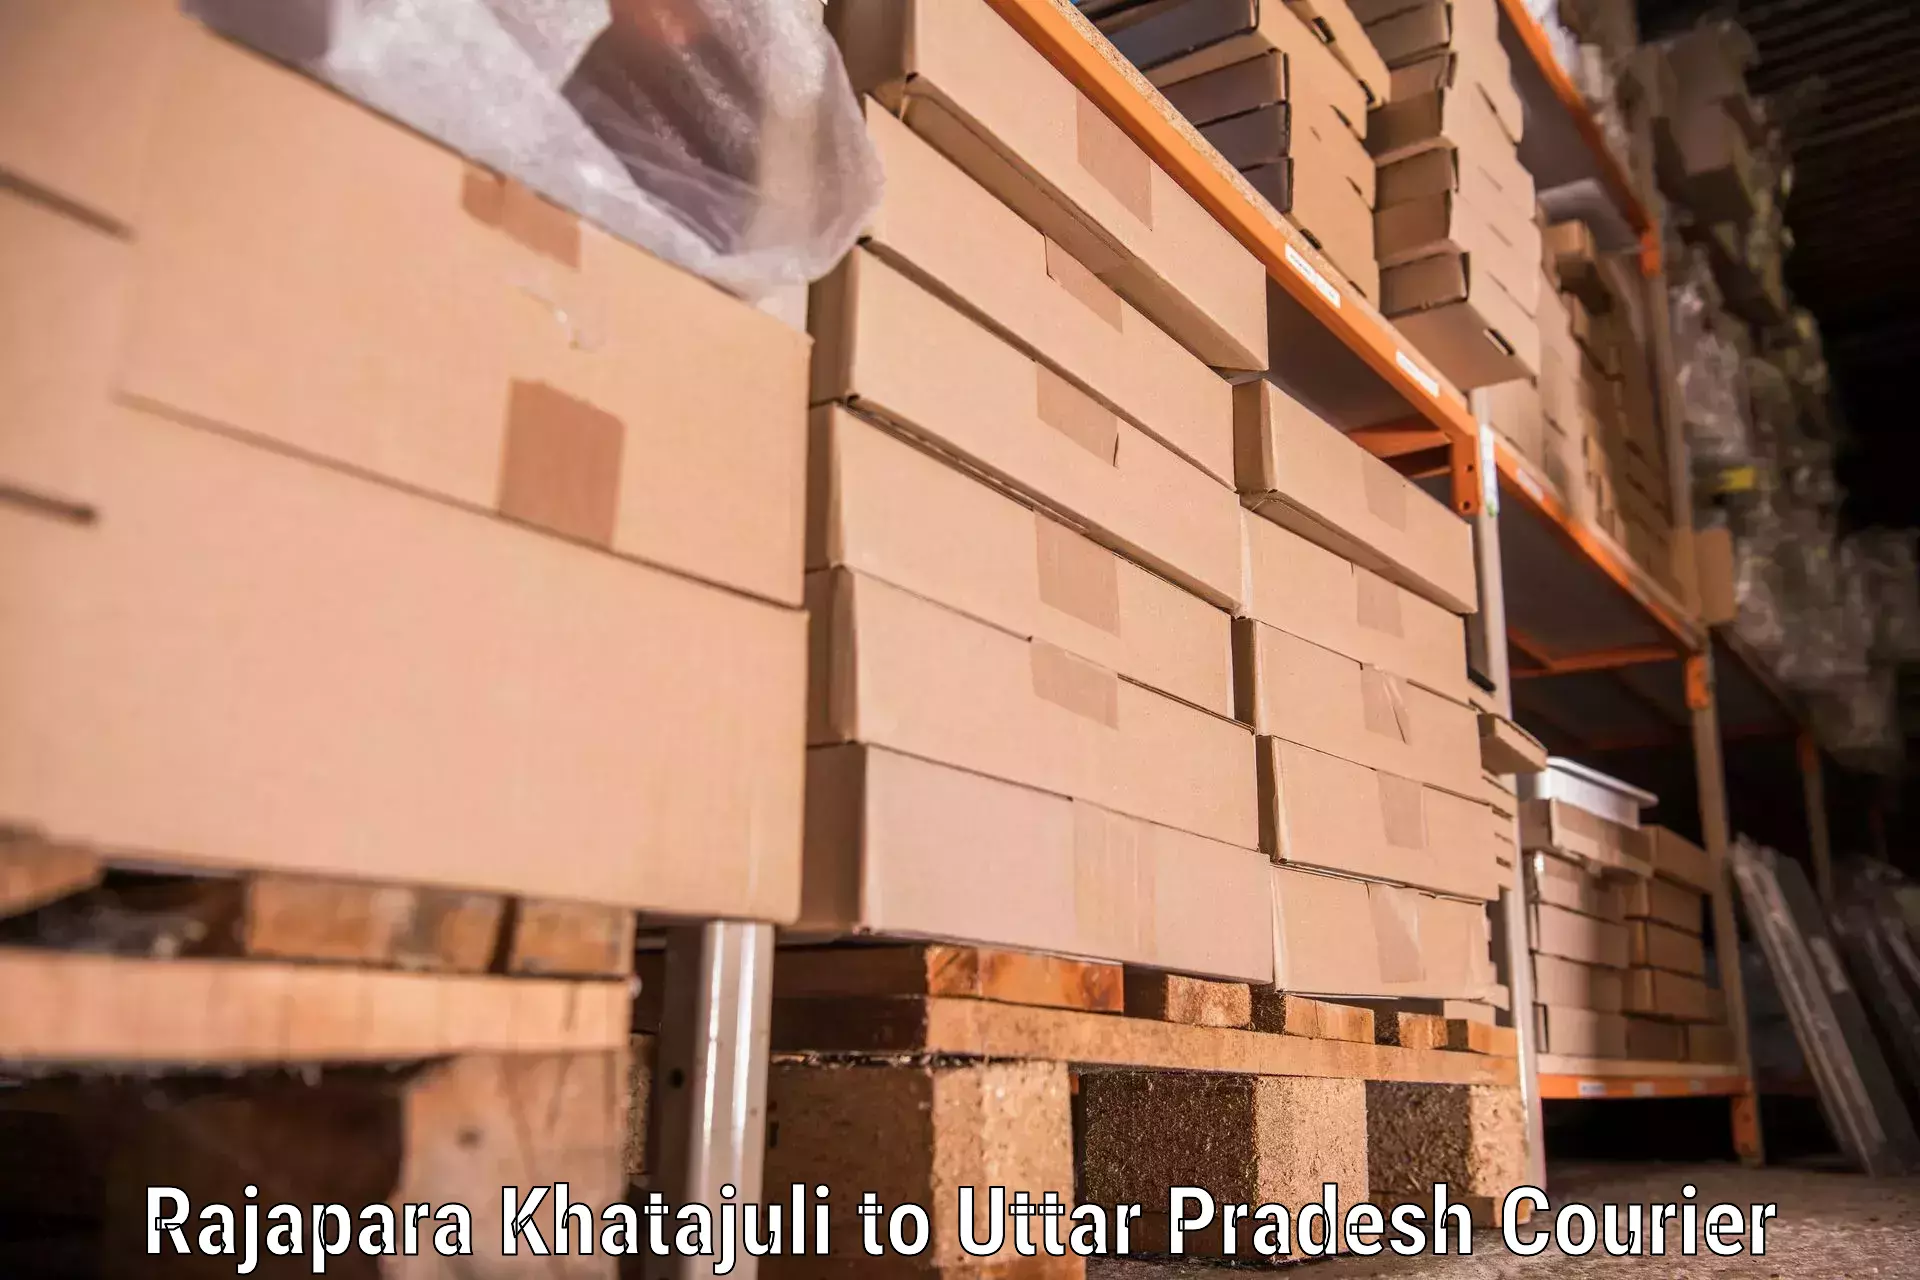 Professional moving company in Rajapara Khatajuli to Sidhauli